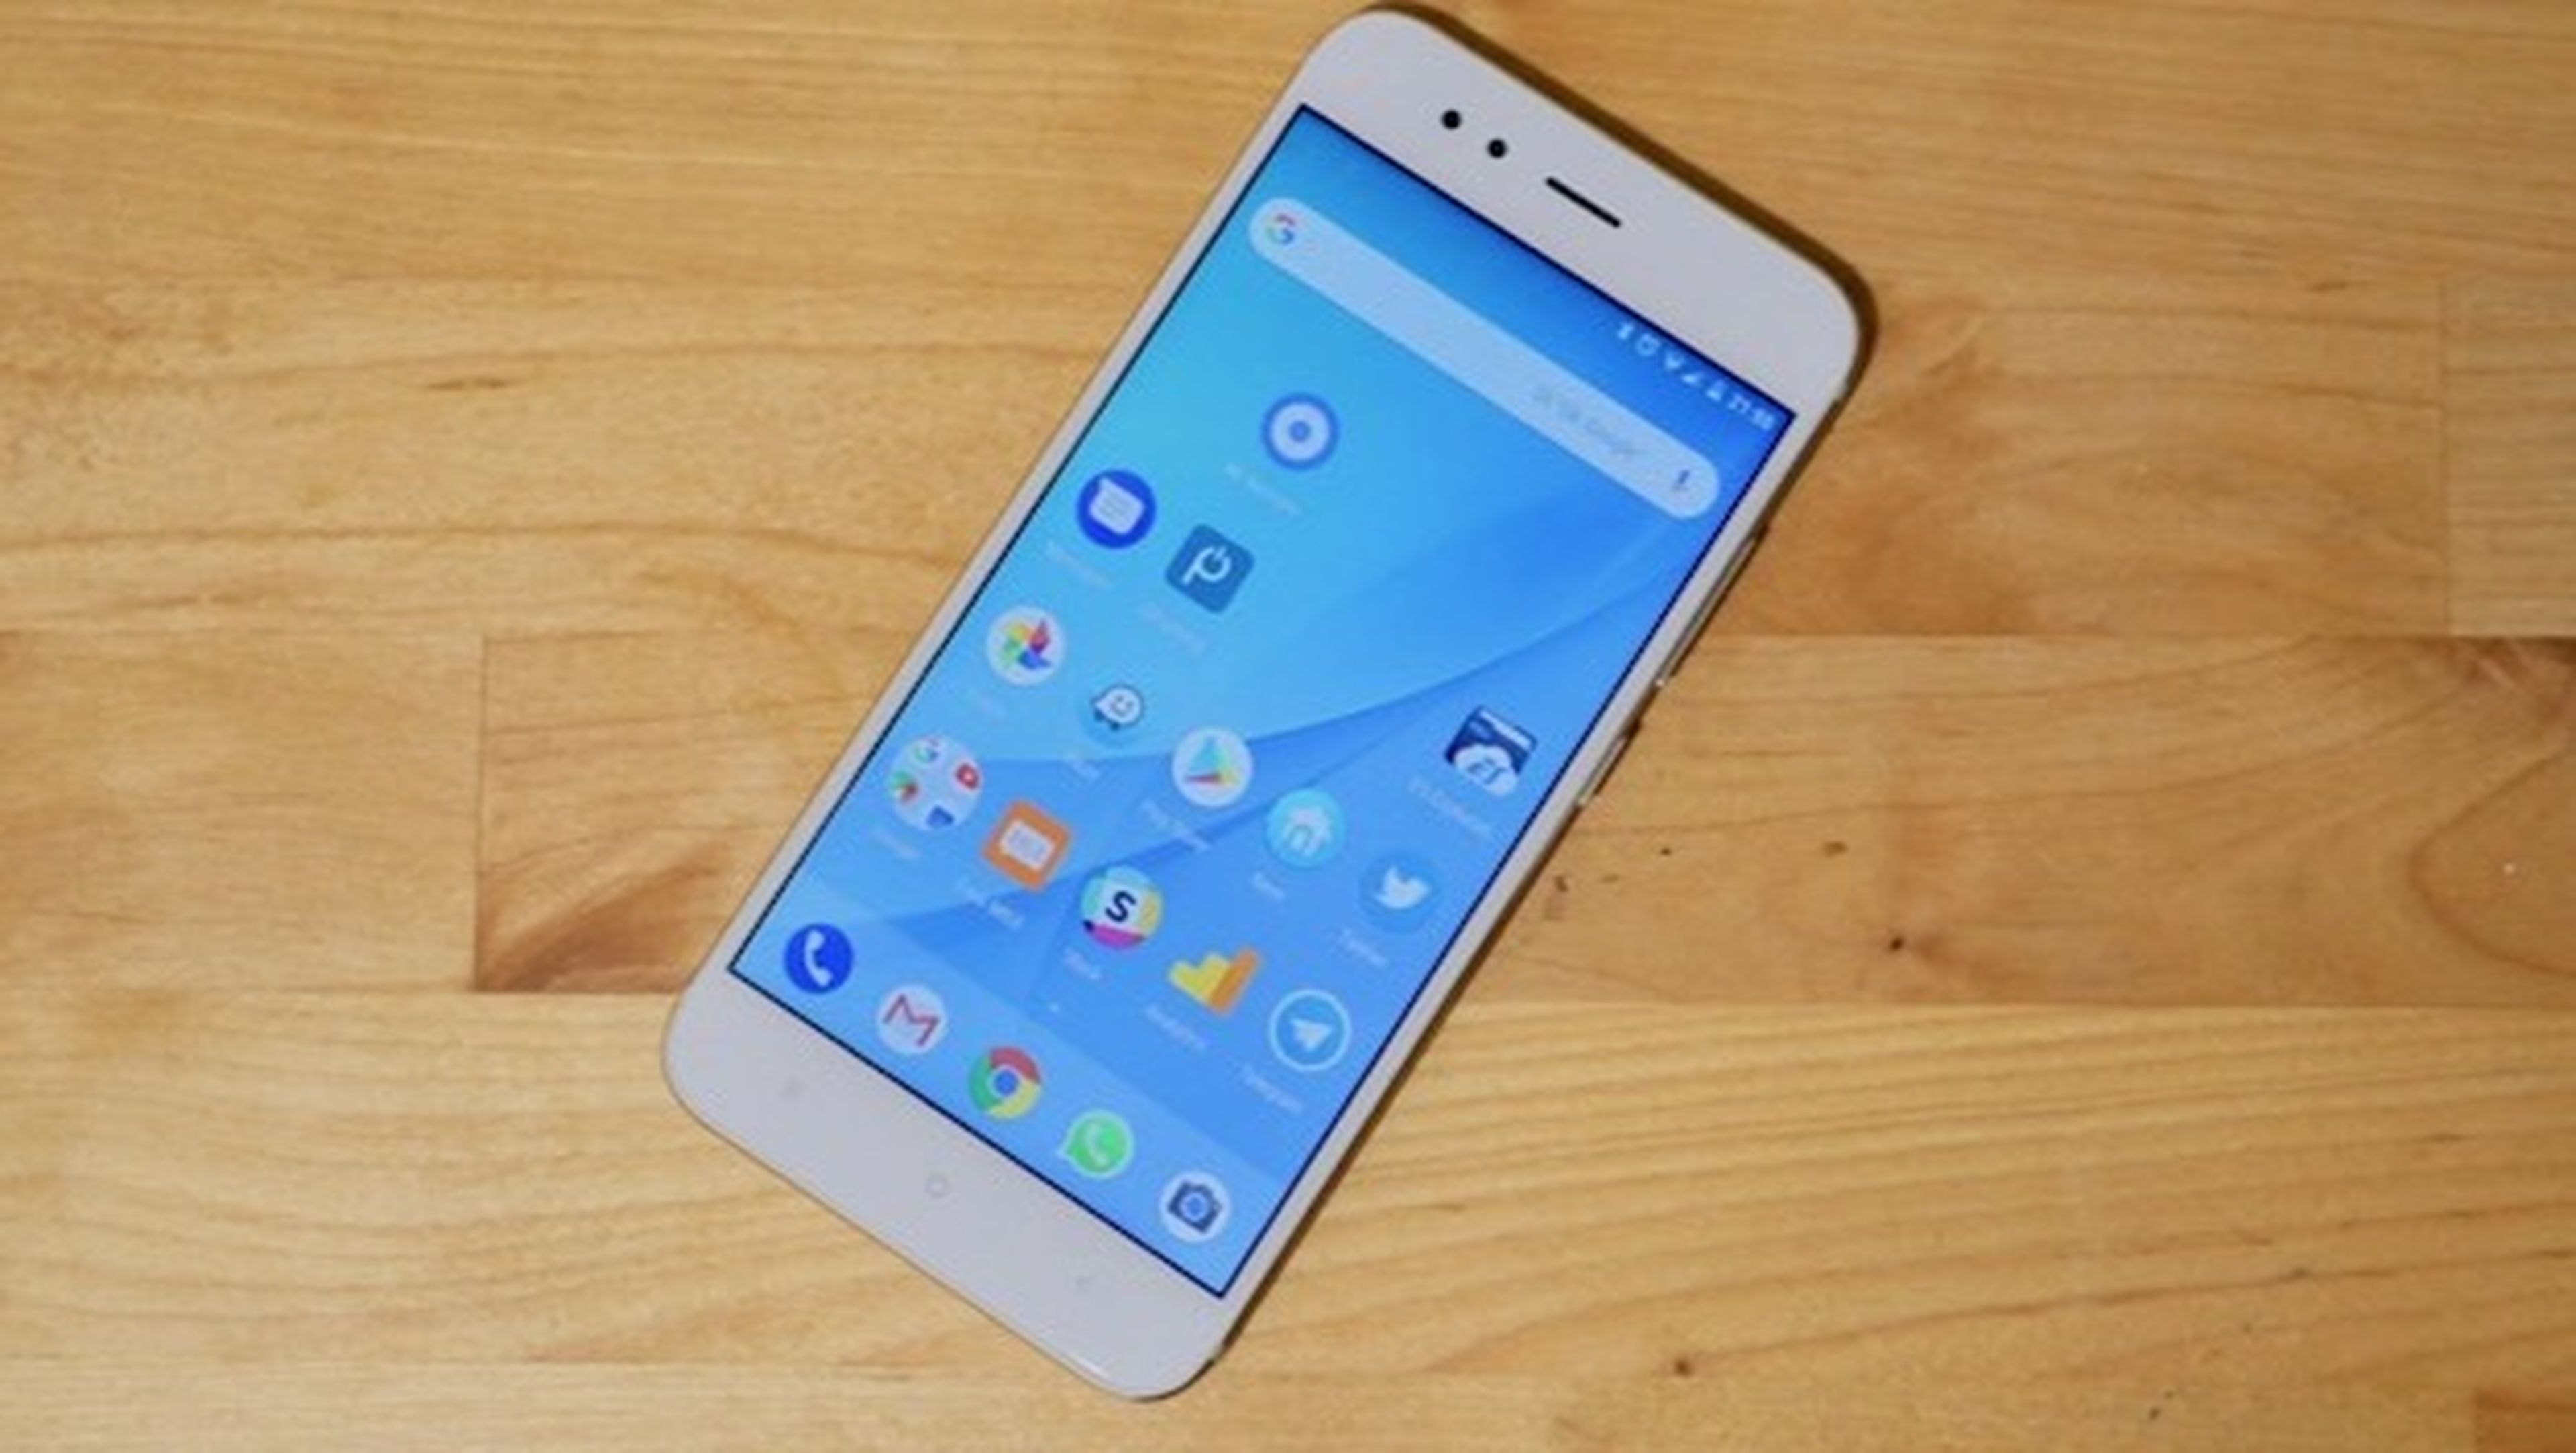 El Xiaomi Mi A1 tiene carga rápida gracias a Android Oreo.